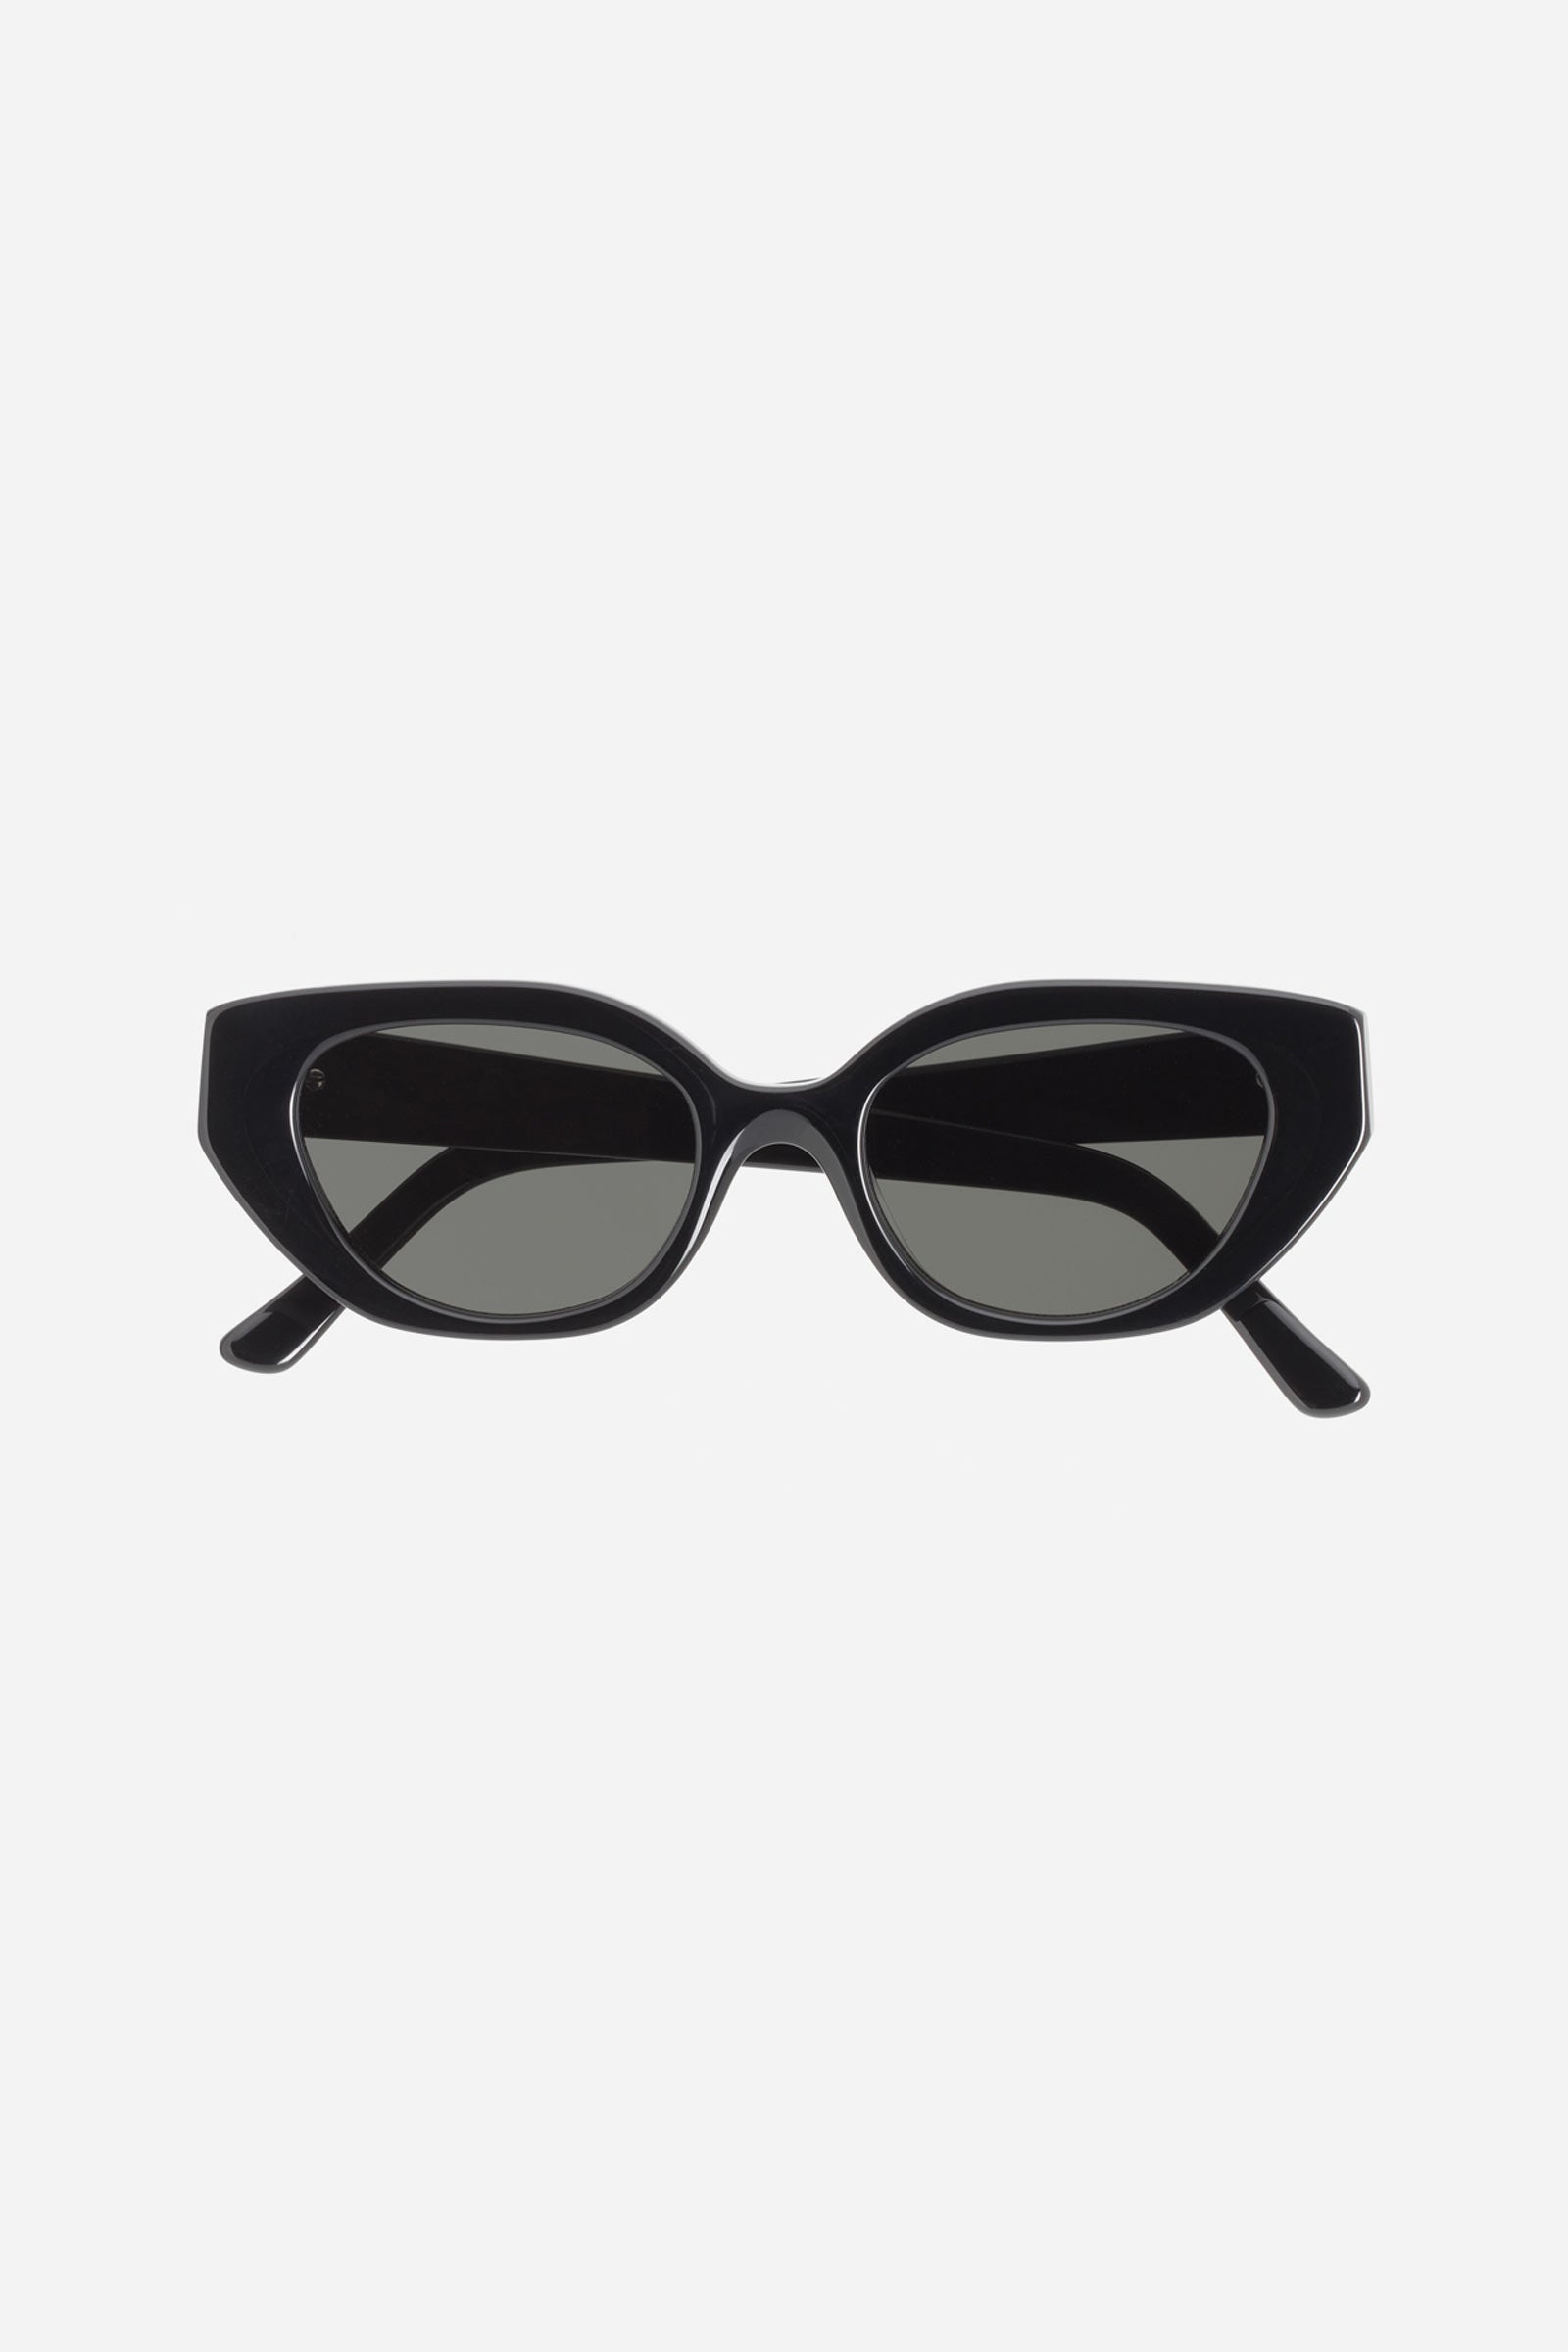 Le Chat Sunglasses Black